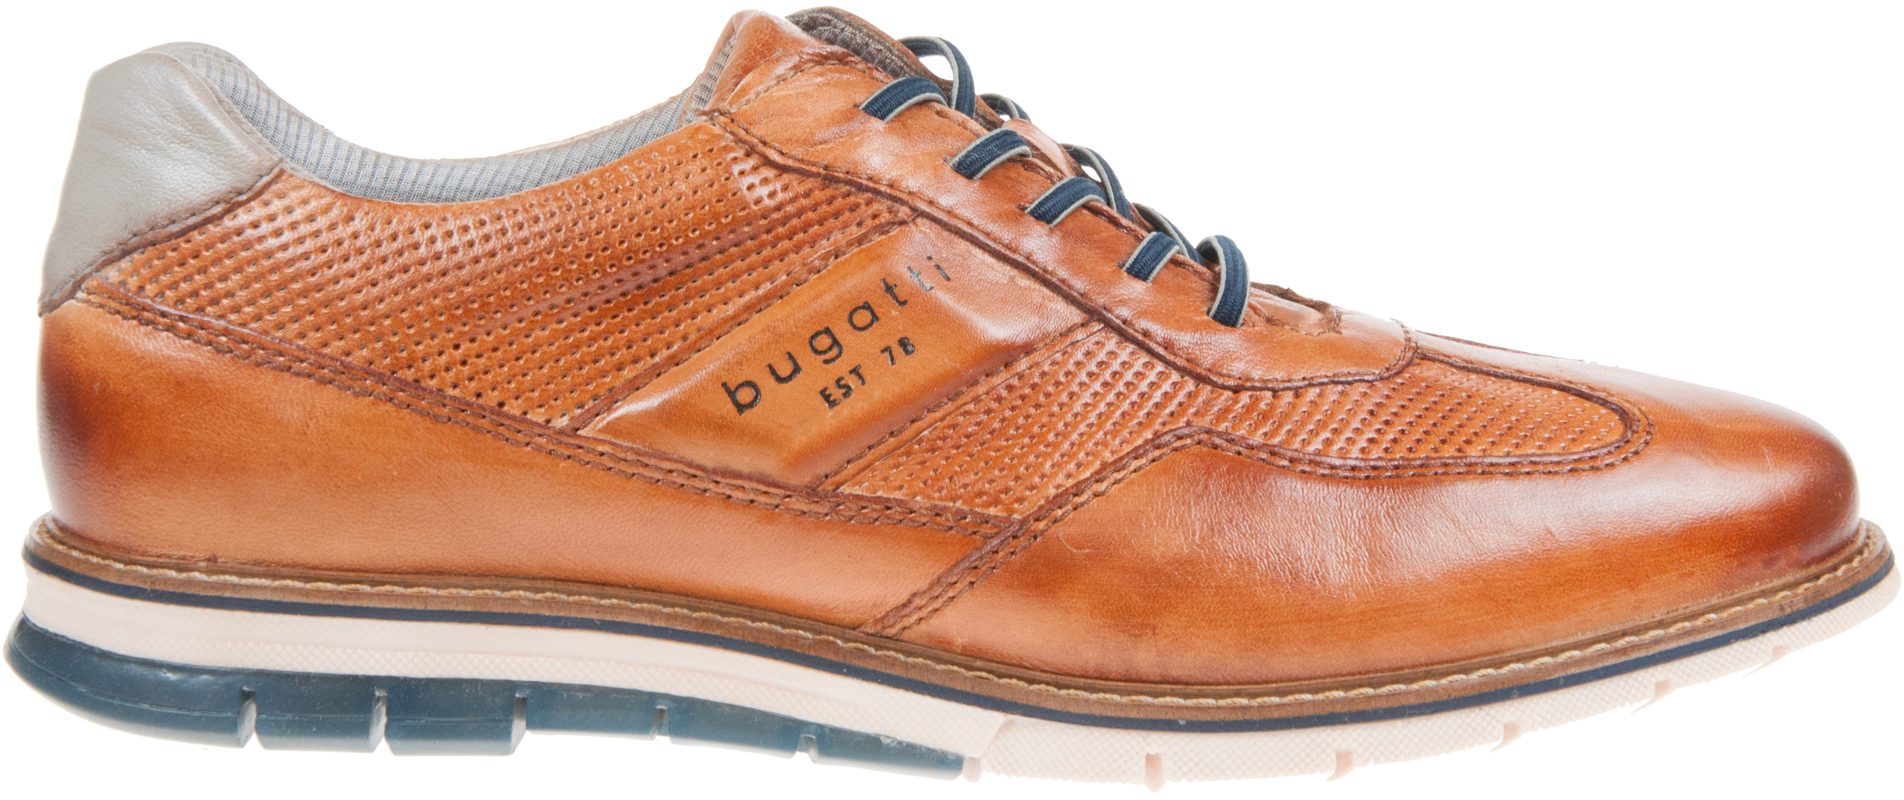 Bugatti Shoes Simone Comfort Cognac 332 9711c 4100 6300 Casual Shoes Humphries Shoes 5556